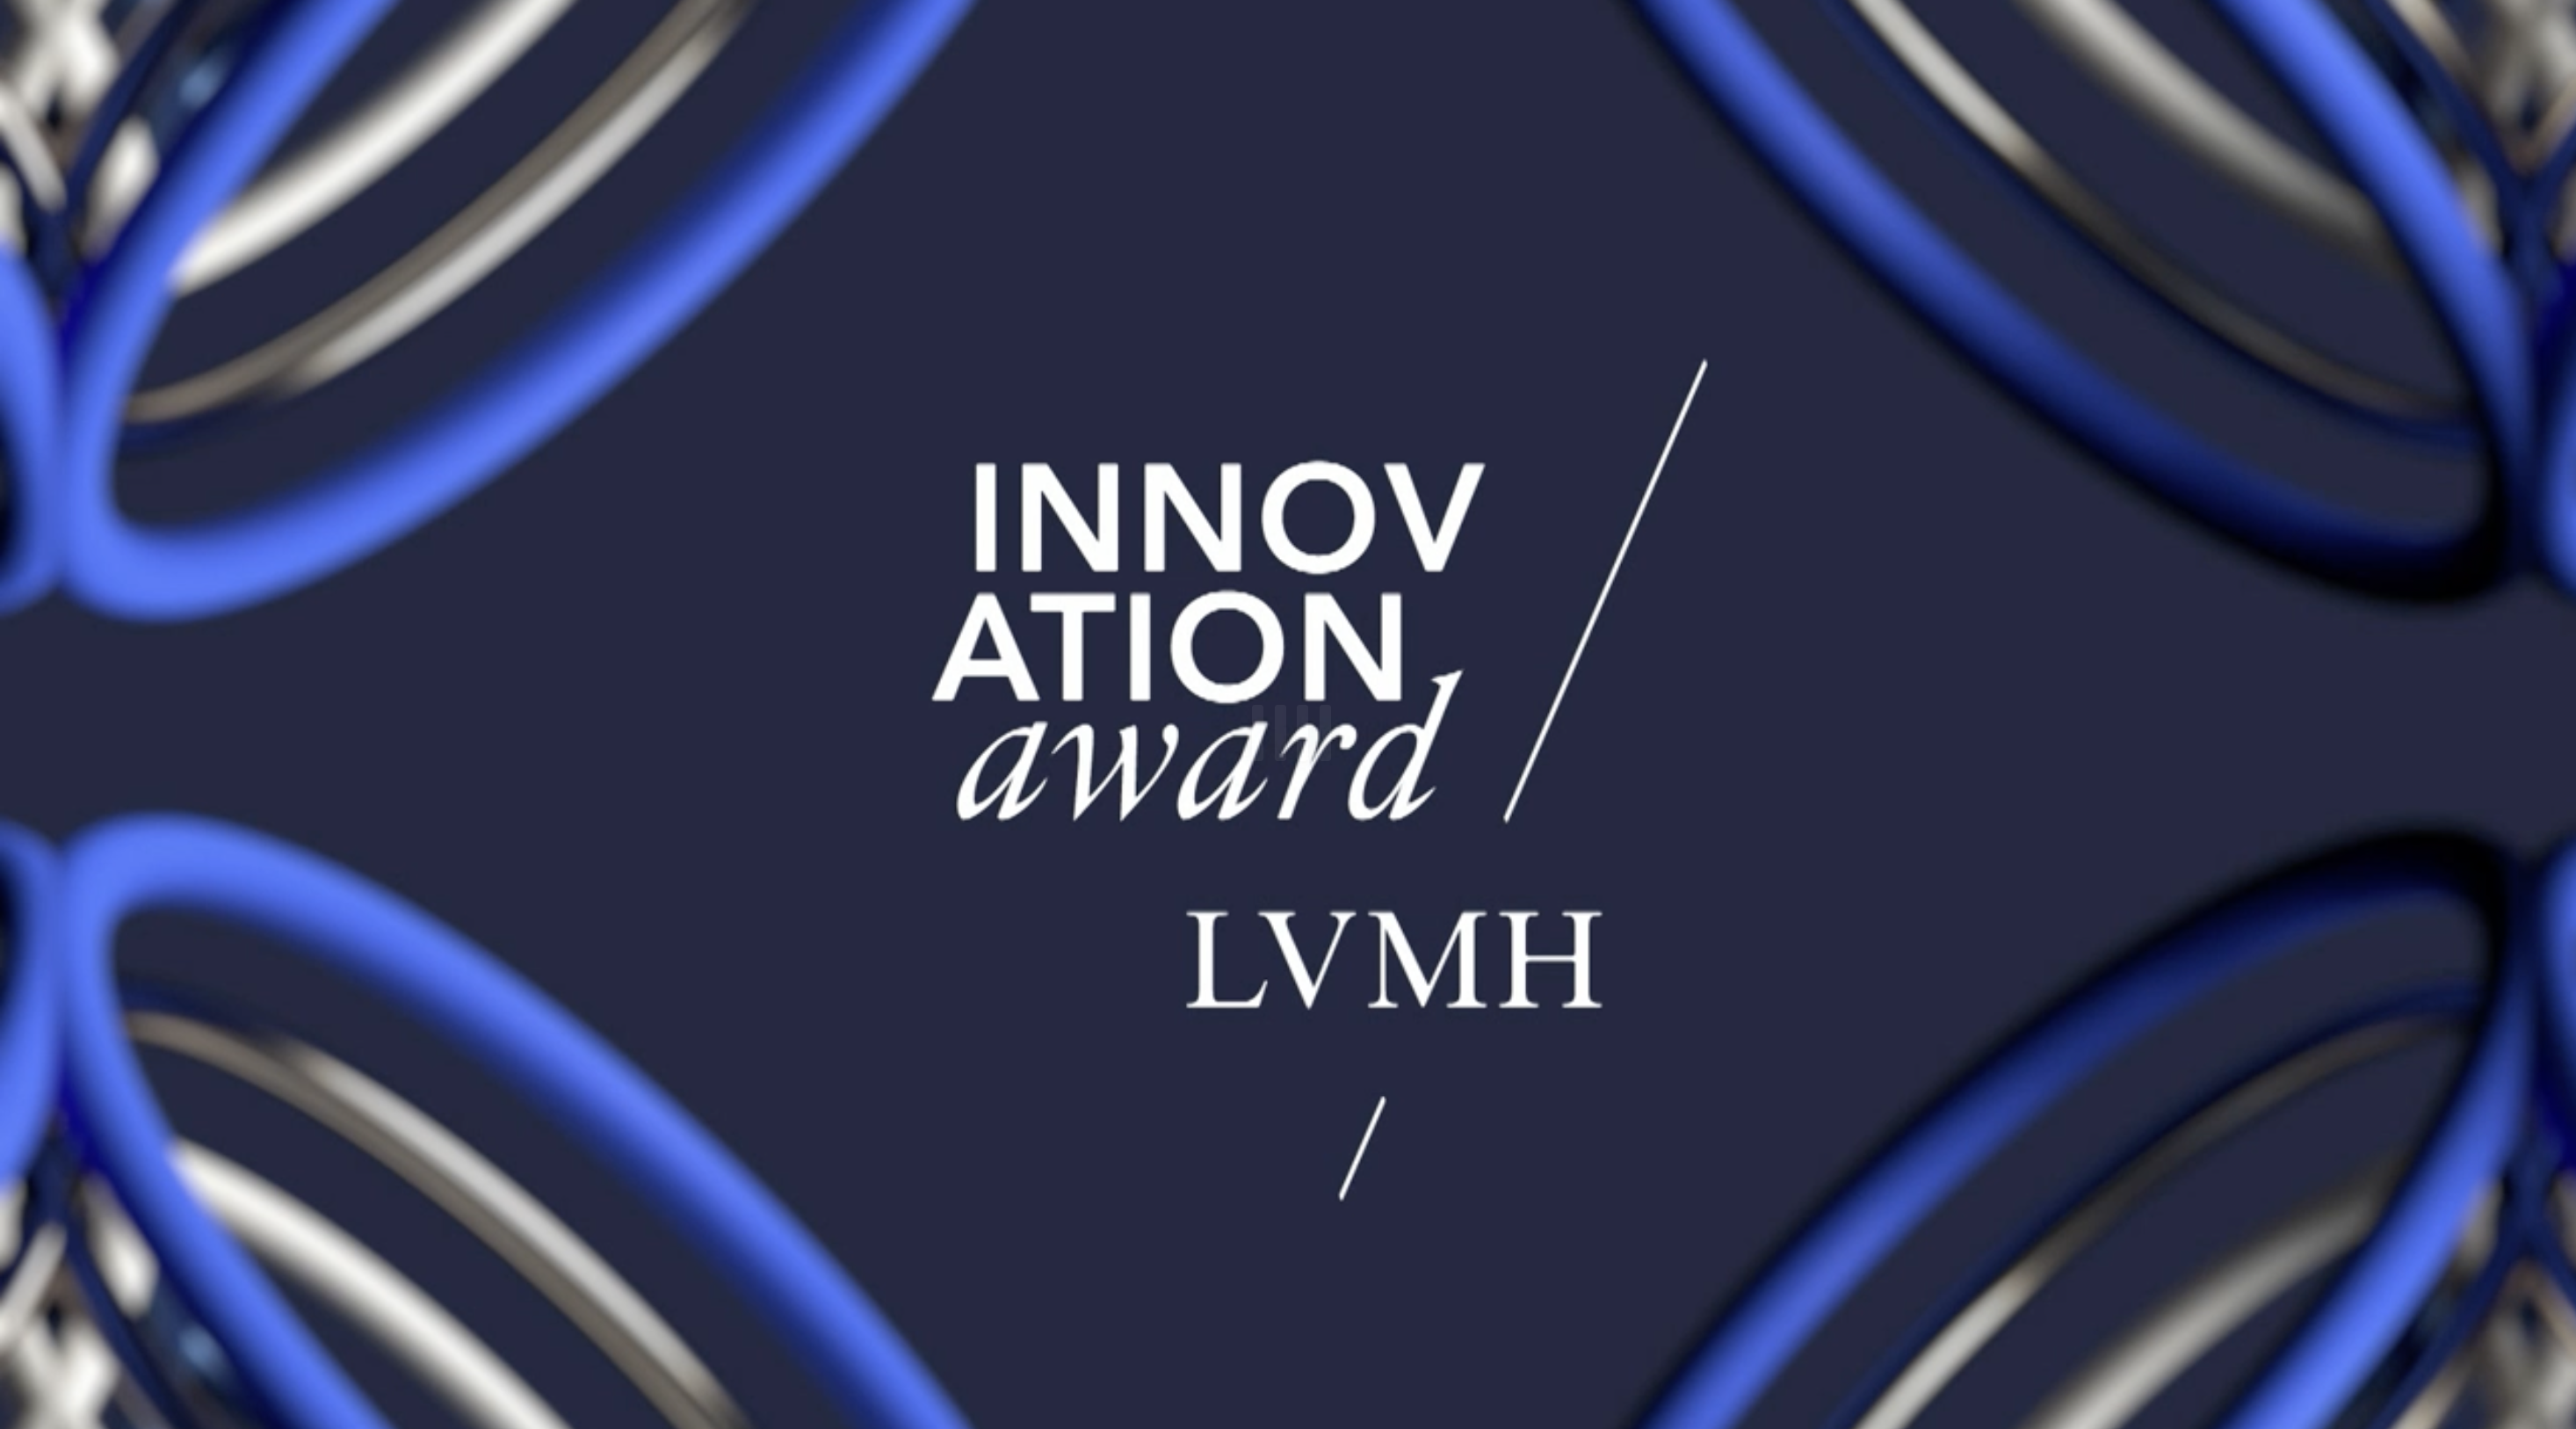 LVMH 发布系列影片，讲述三家获得LVMH创新奖的创业公司的故事